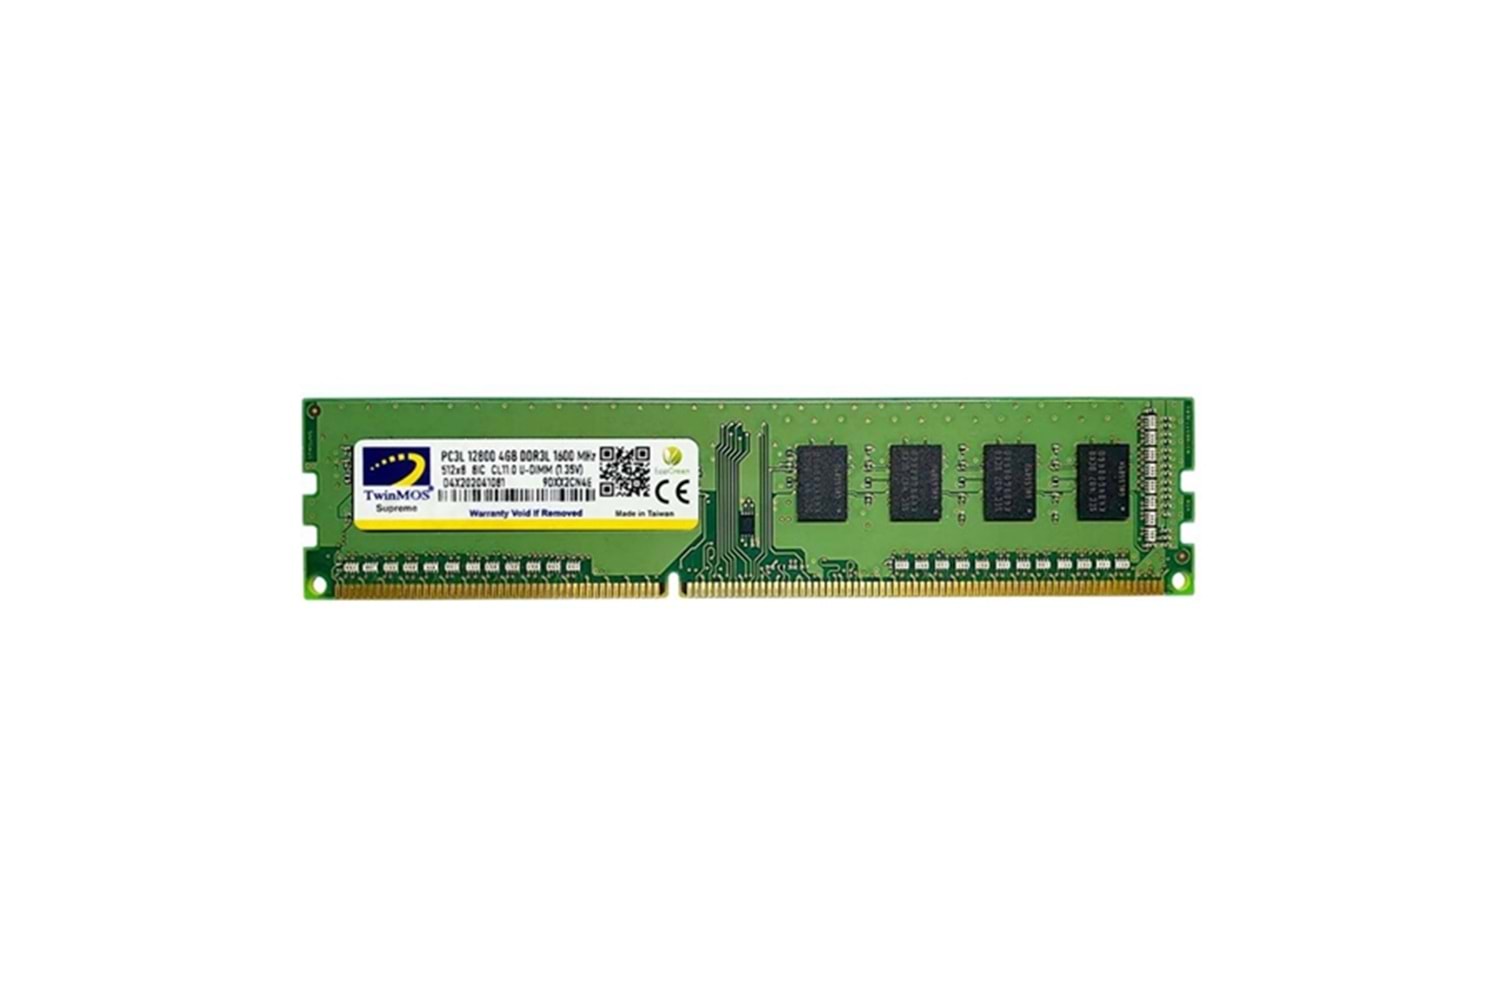 Twinmos MDD3L4GB1600D 4 GB DDR3 1600 MHz CL11 Ram